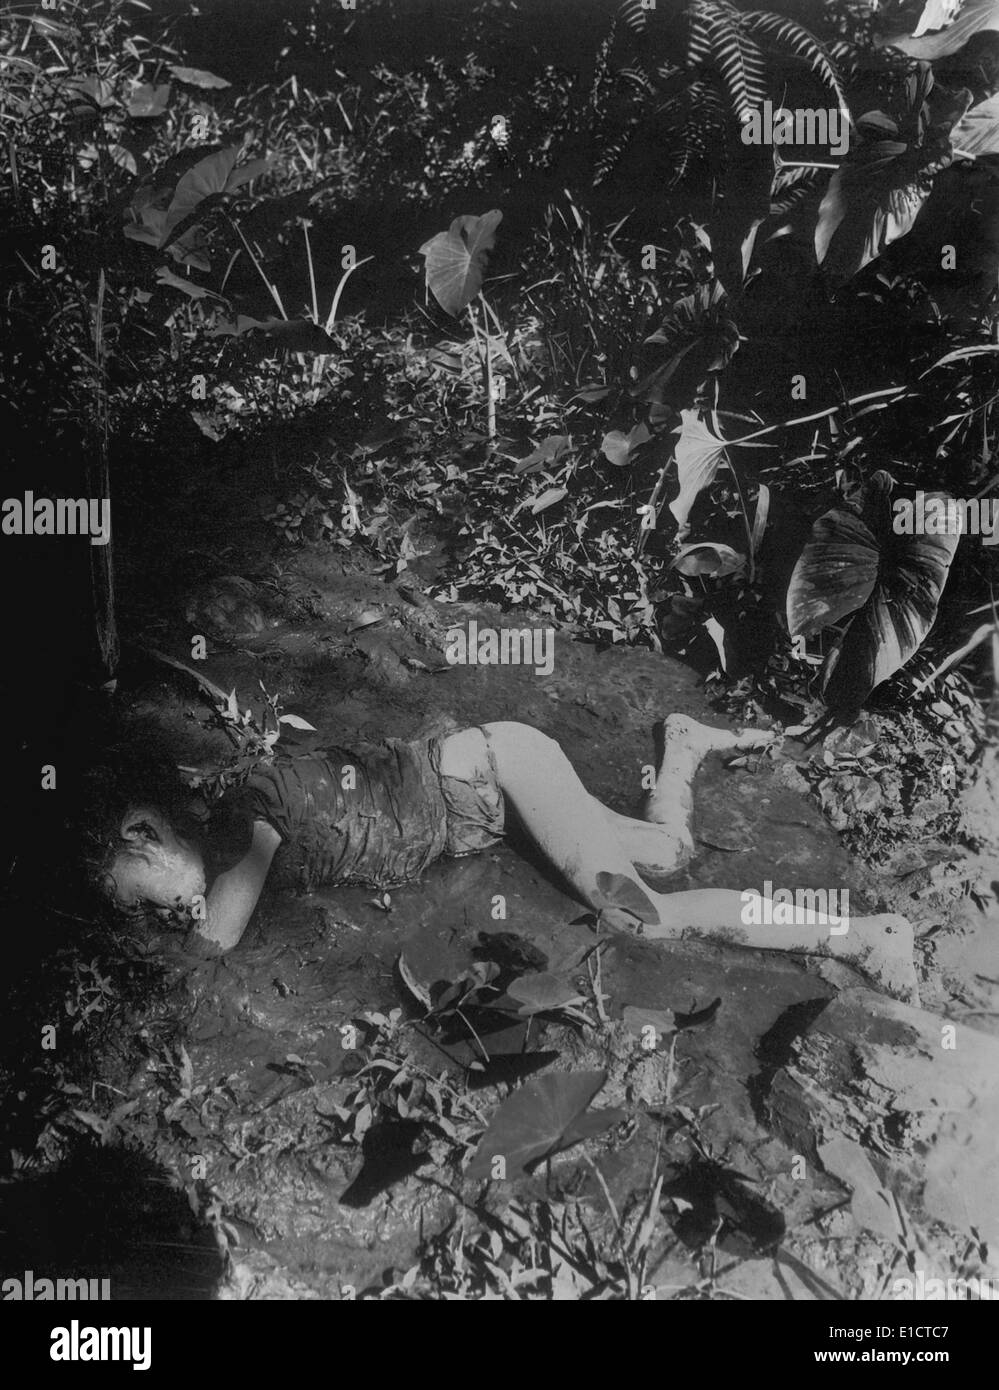 Pose de l'enfant morte Filippino dans la boue de creek tués par les Japonais le 9 avril 1945 à Bingas, Luzon. Îles des Philippines. La Seconde Guerre mondiale Banque D'Images